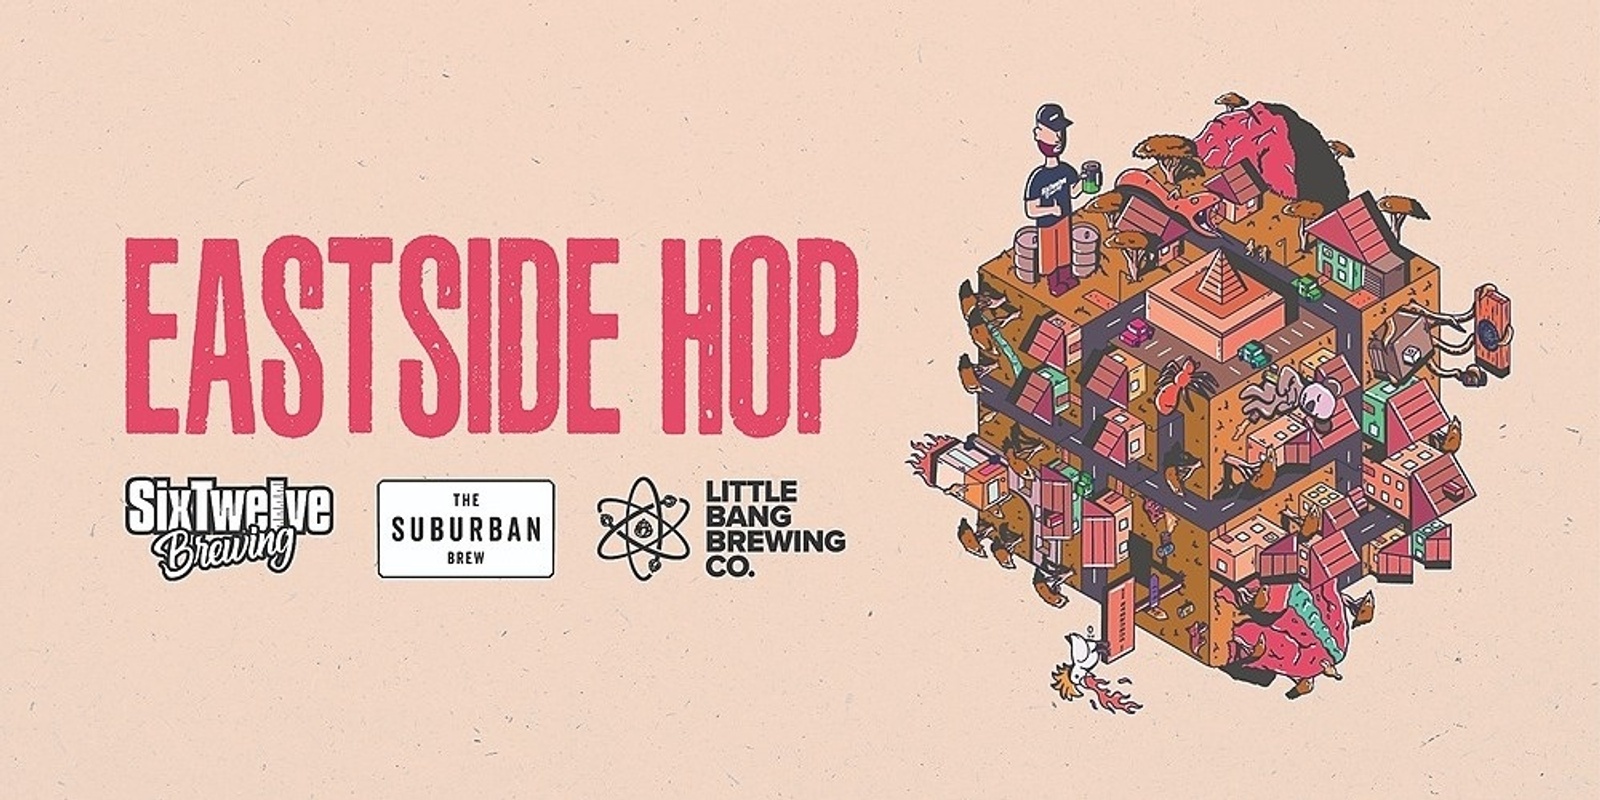 Banner image for East Side Hop